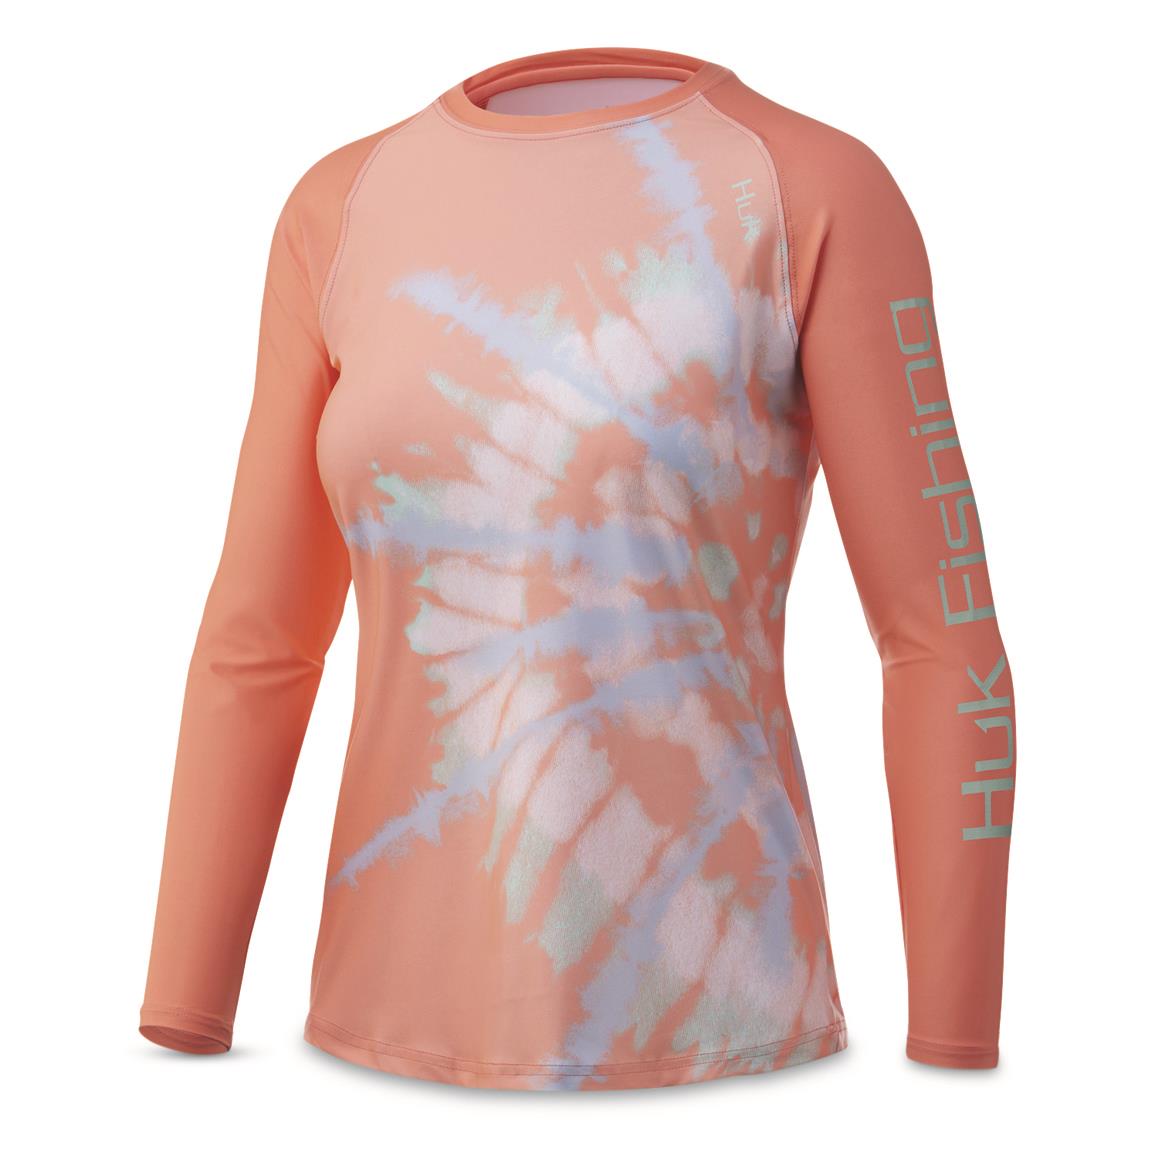 Huk Women's Spiral Dye Double Header Long-Sleeved Performance Shirt, Desert Flower